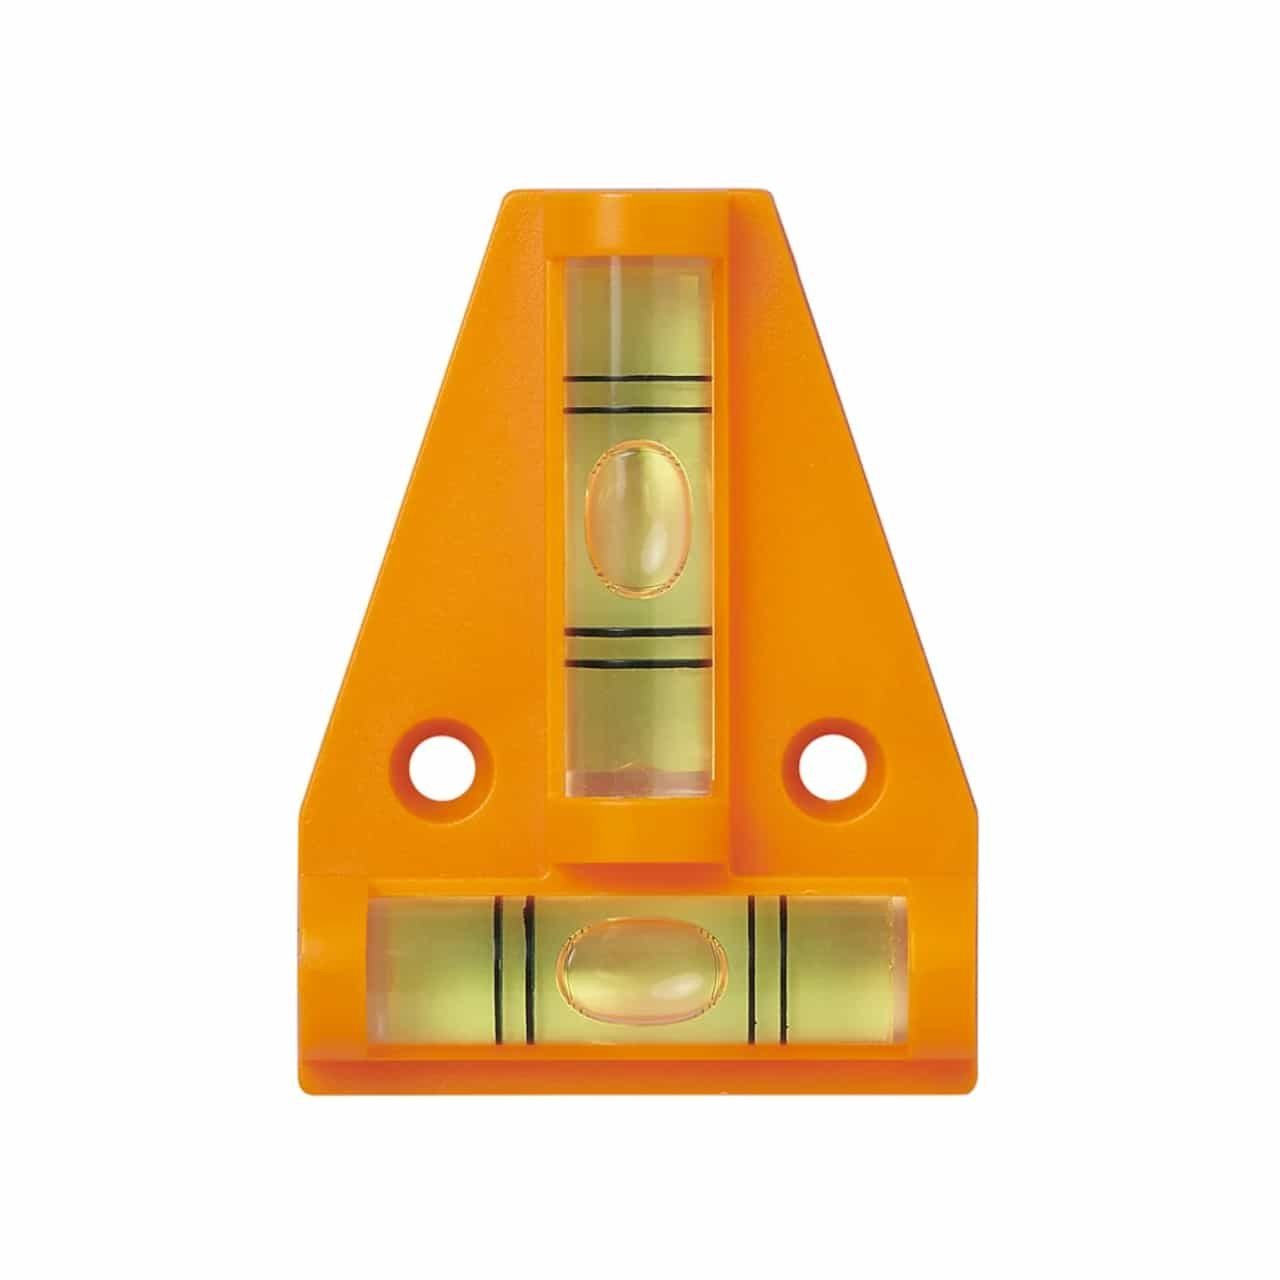 Baugeräte Anhänger Wohnwagen Kreuzwasserwaage Magnet Wasserwaage Orange, Hausbedarf ProPlus mit Wasserwaage für